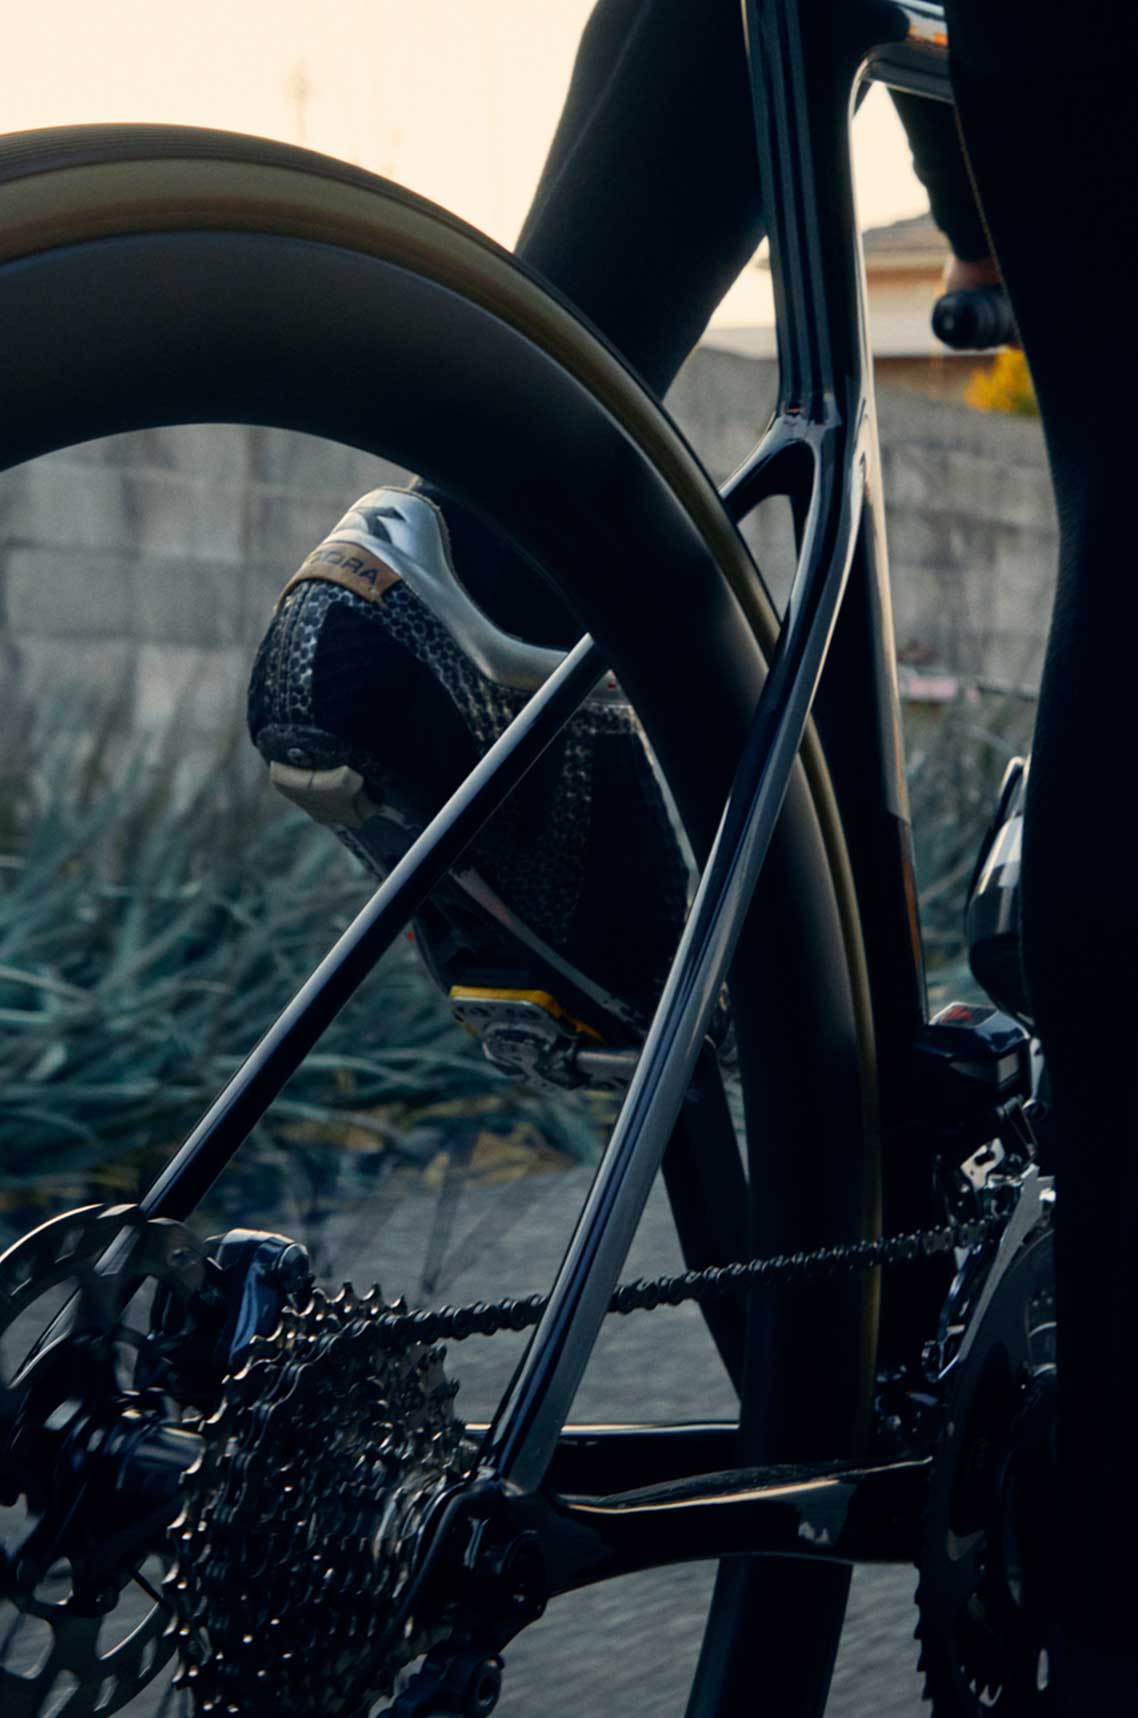 Cannondale SupeSix EVO Carbon Disc105 Particolare forcella posteriore e carro ripresi da bici in movimento